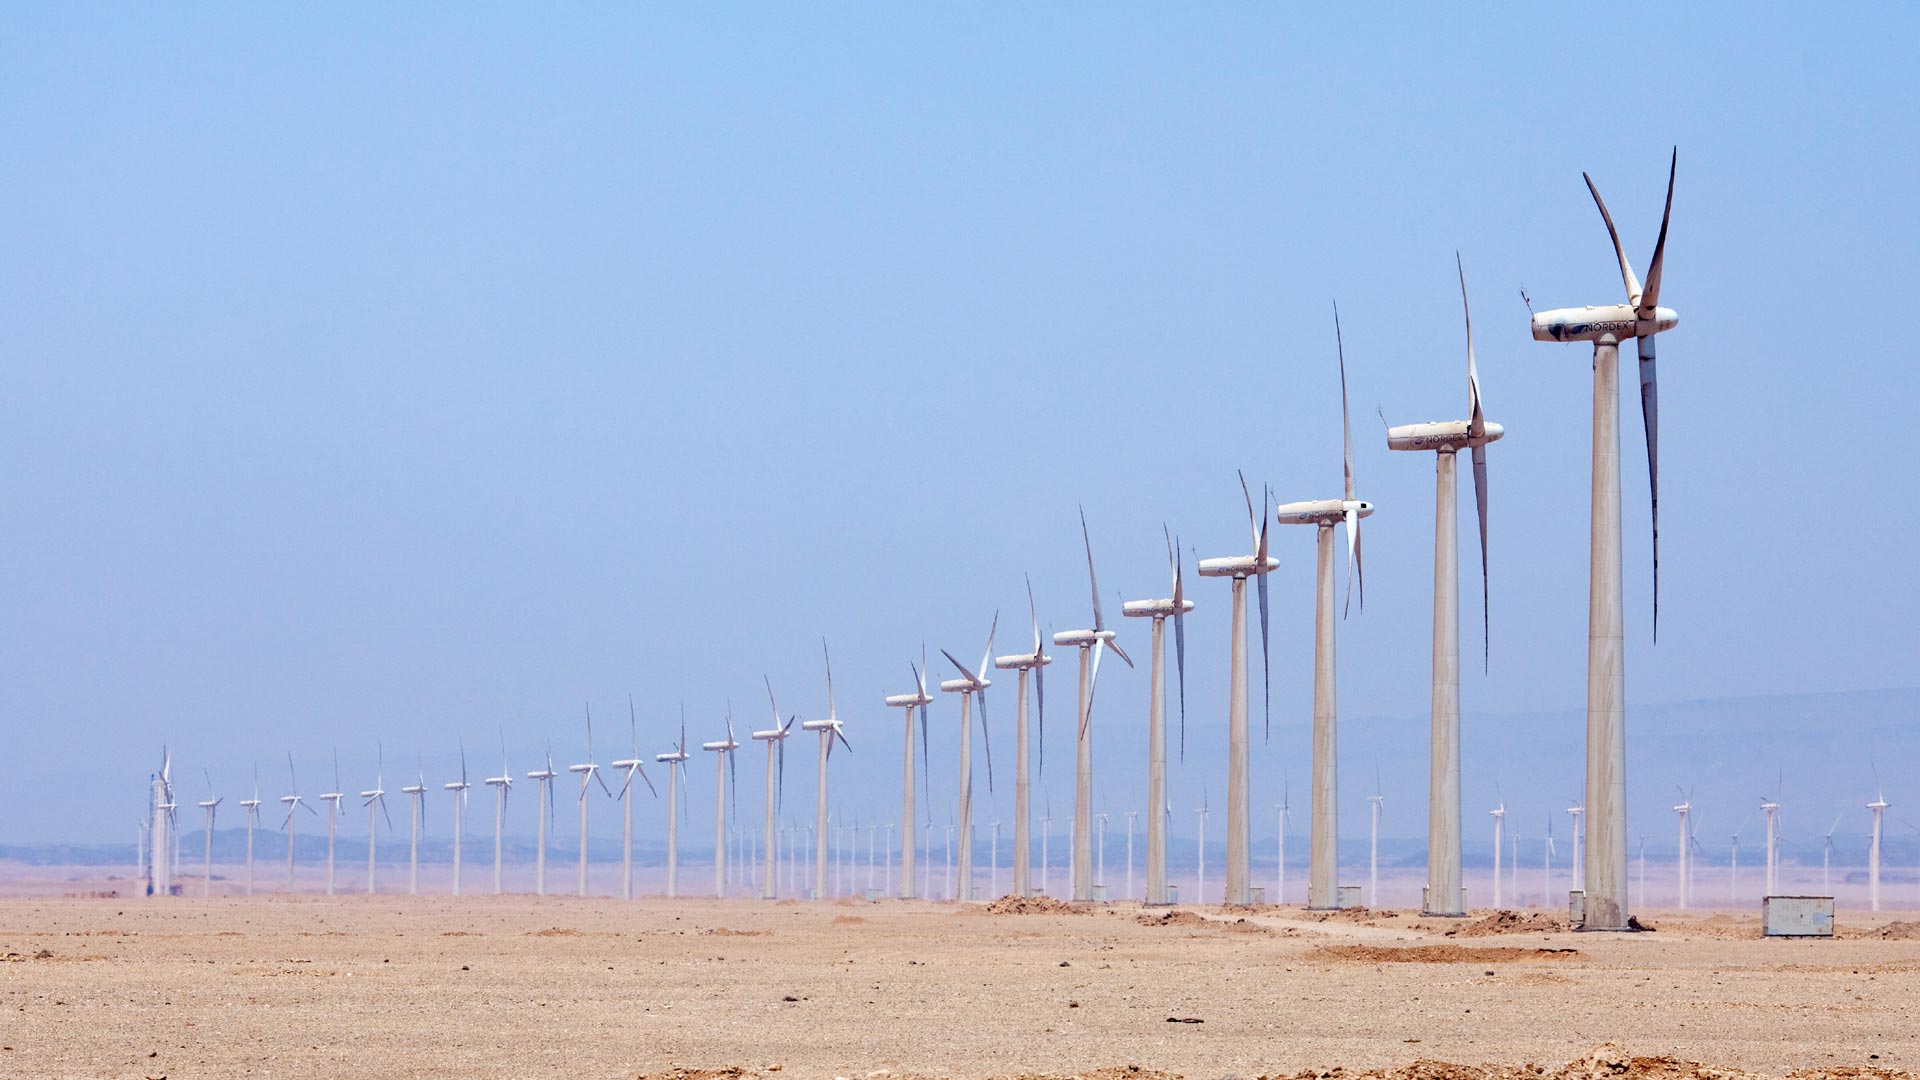 Windpark bei Zafarana, Ägypten: Zahlreiche Windkrafanlagen stehen in einer langen Reihe in einer wüstenähnlichen Landschaft